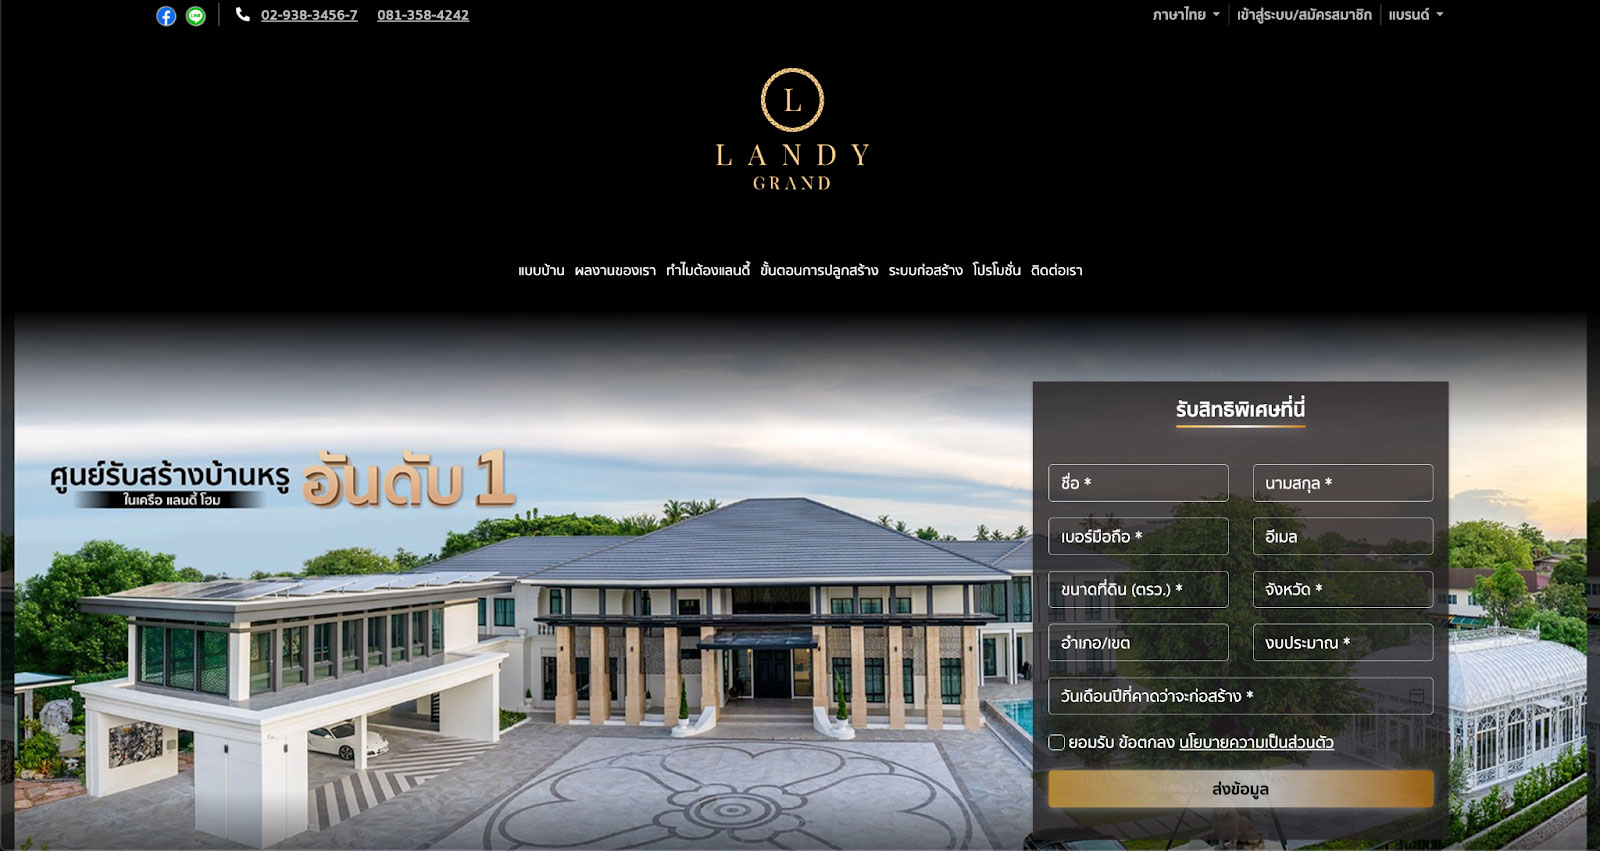 แลนดี้ แกรนด์ (LANDY GRAND) บริษัทรับสร้างบ้านหรู